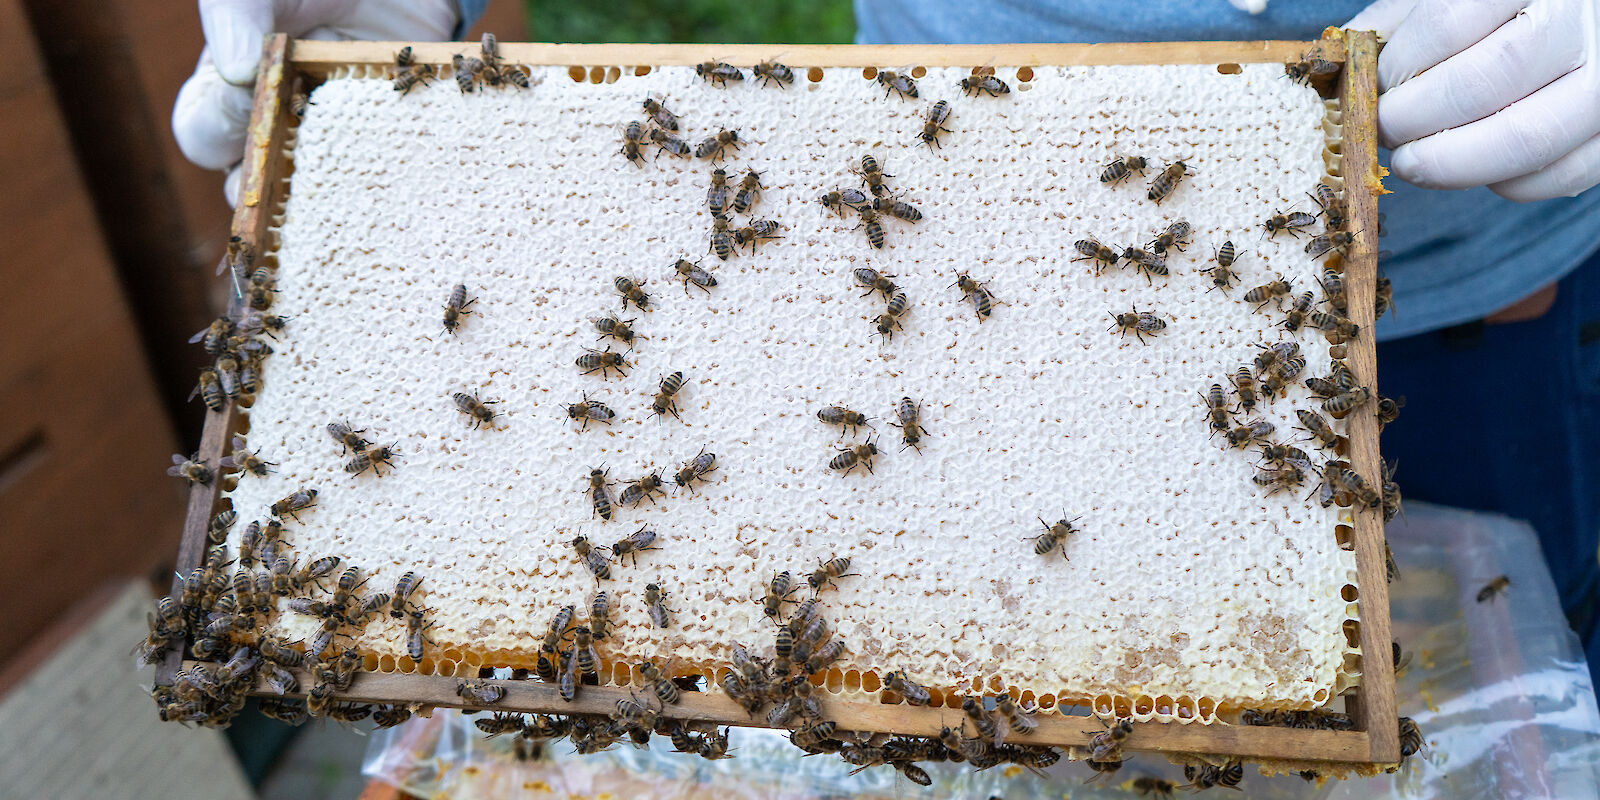 Patrick Huhn hält eine Wabe in die Kamera, auf der viele Bienen herumkrabbeln